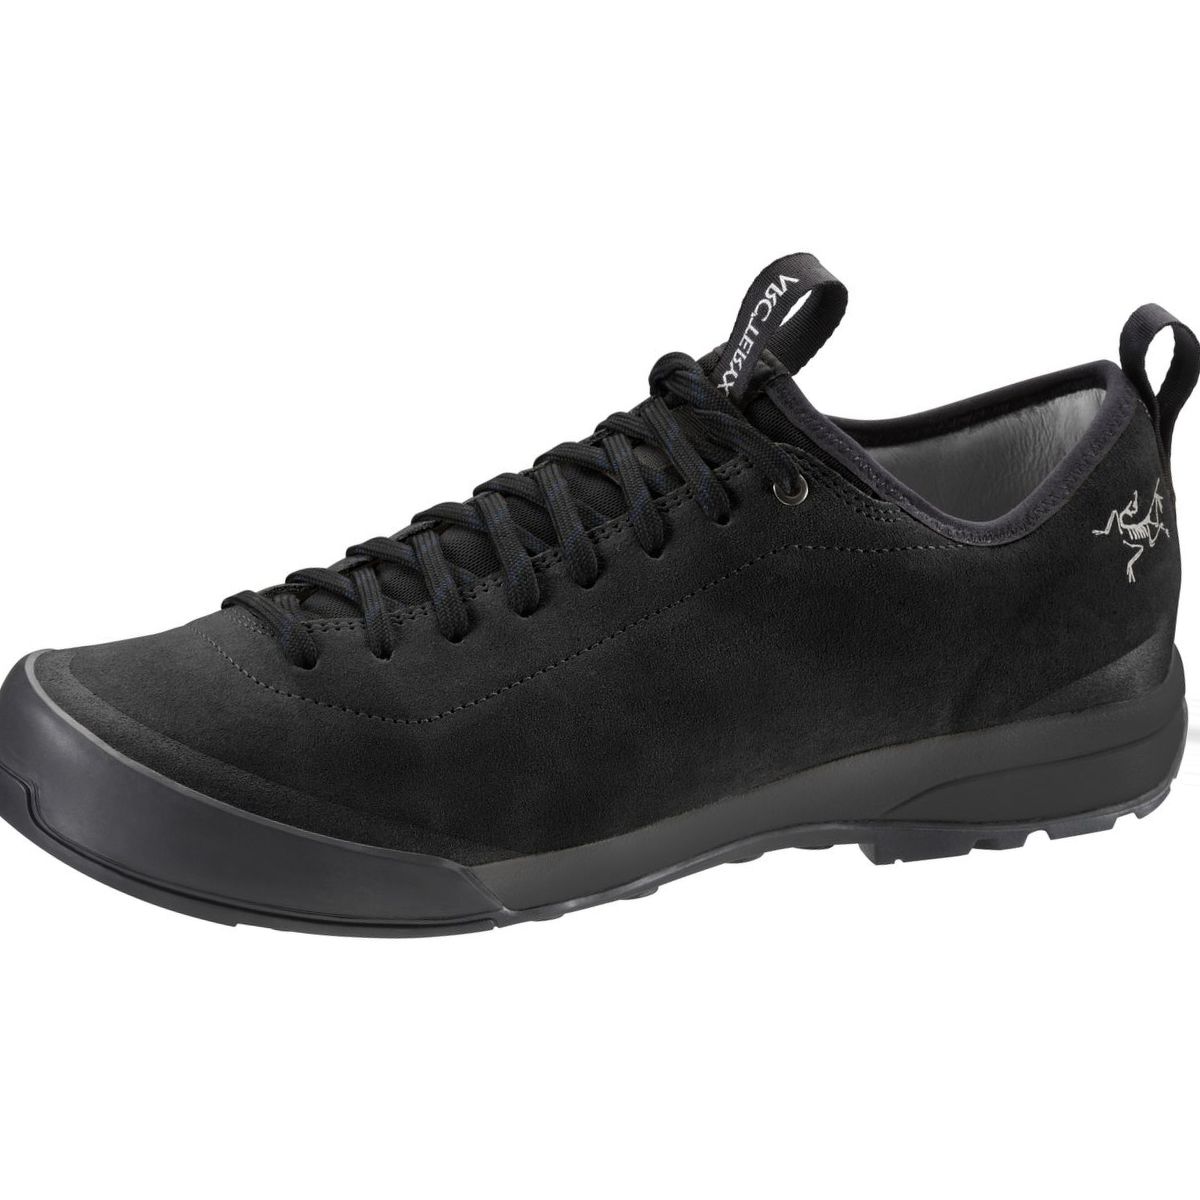 Arc'teryx Acrux SL Leather Approach Shoe - Men's